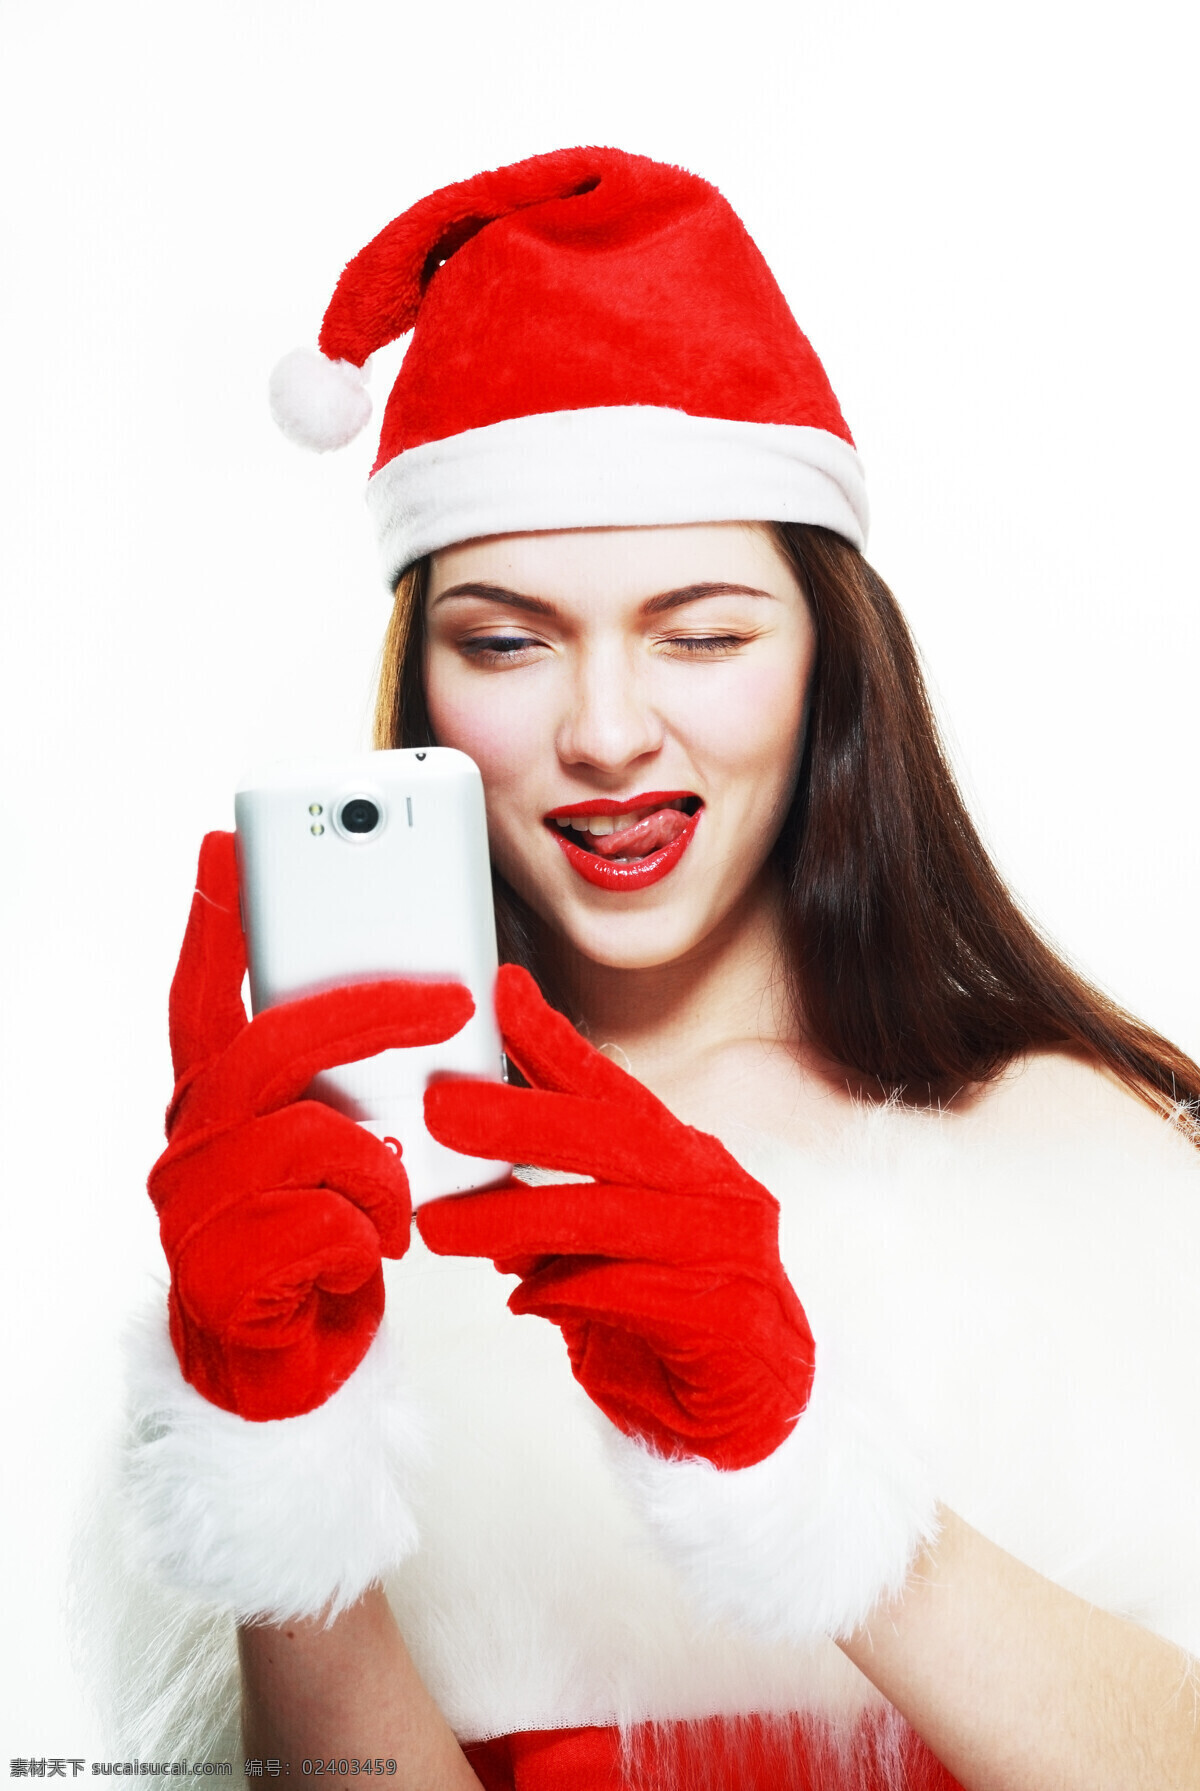 手机 圣诞 装 美女图片 拿着手机 圣诞装美女 长发美女 红色手套 外国人 生活人物 人物图片